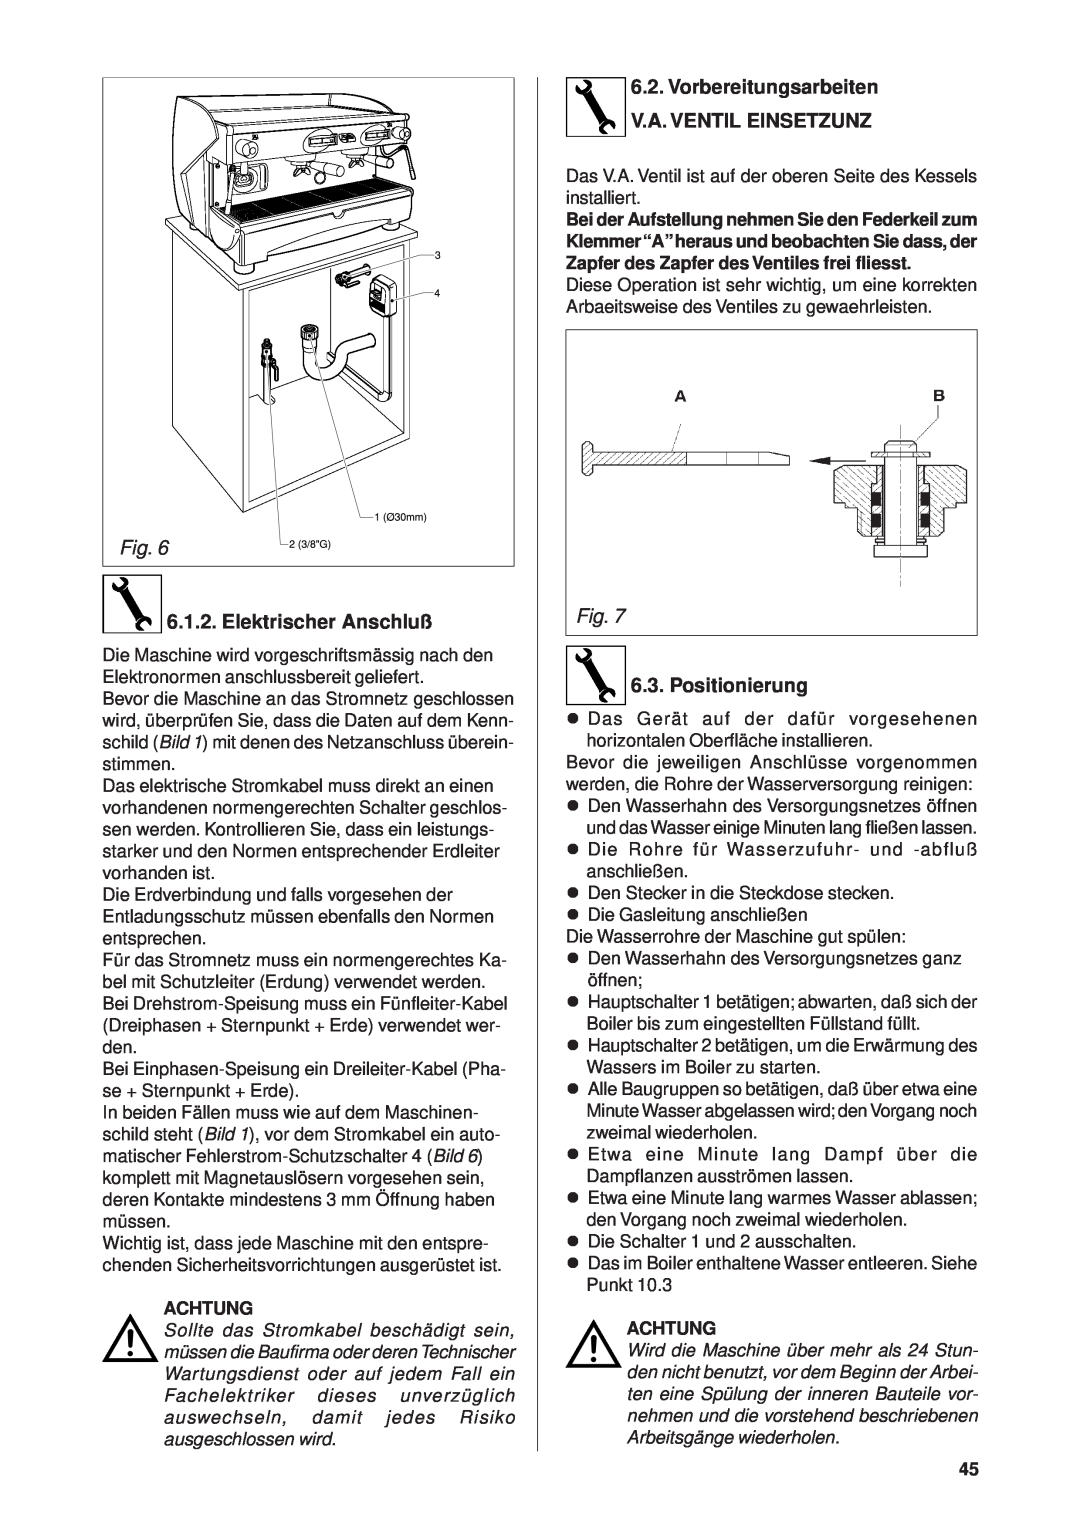 Rancilio Millennium manual Elektrischer Anschluß, Vorbereitungsarbeiten V.A. VENTIL EINSETZUNZ, Positionierung 